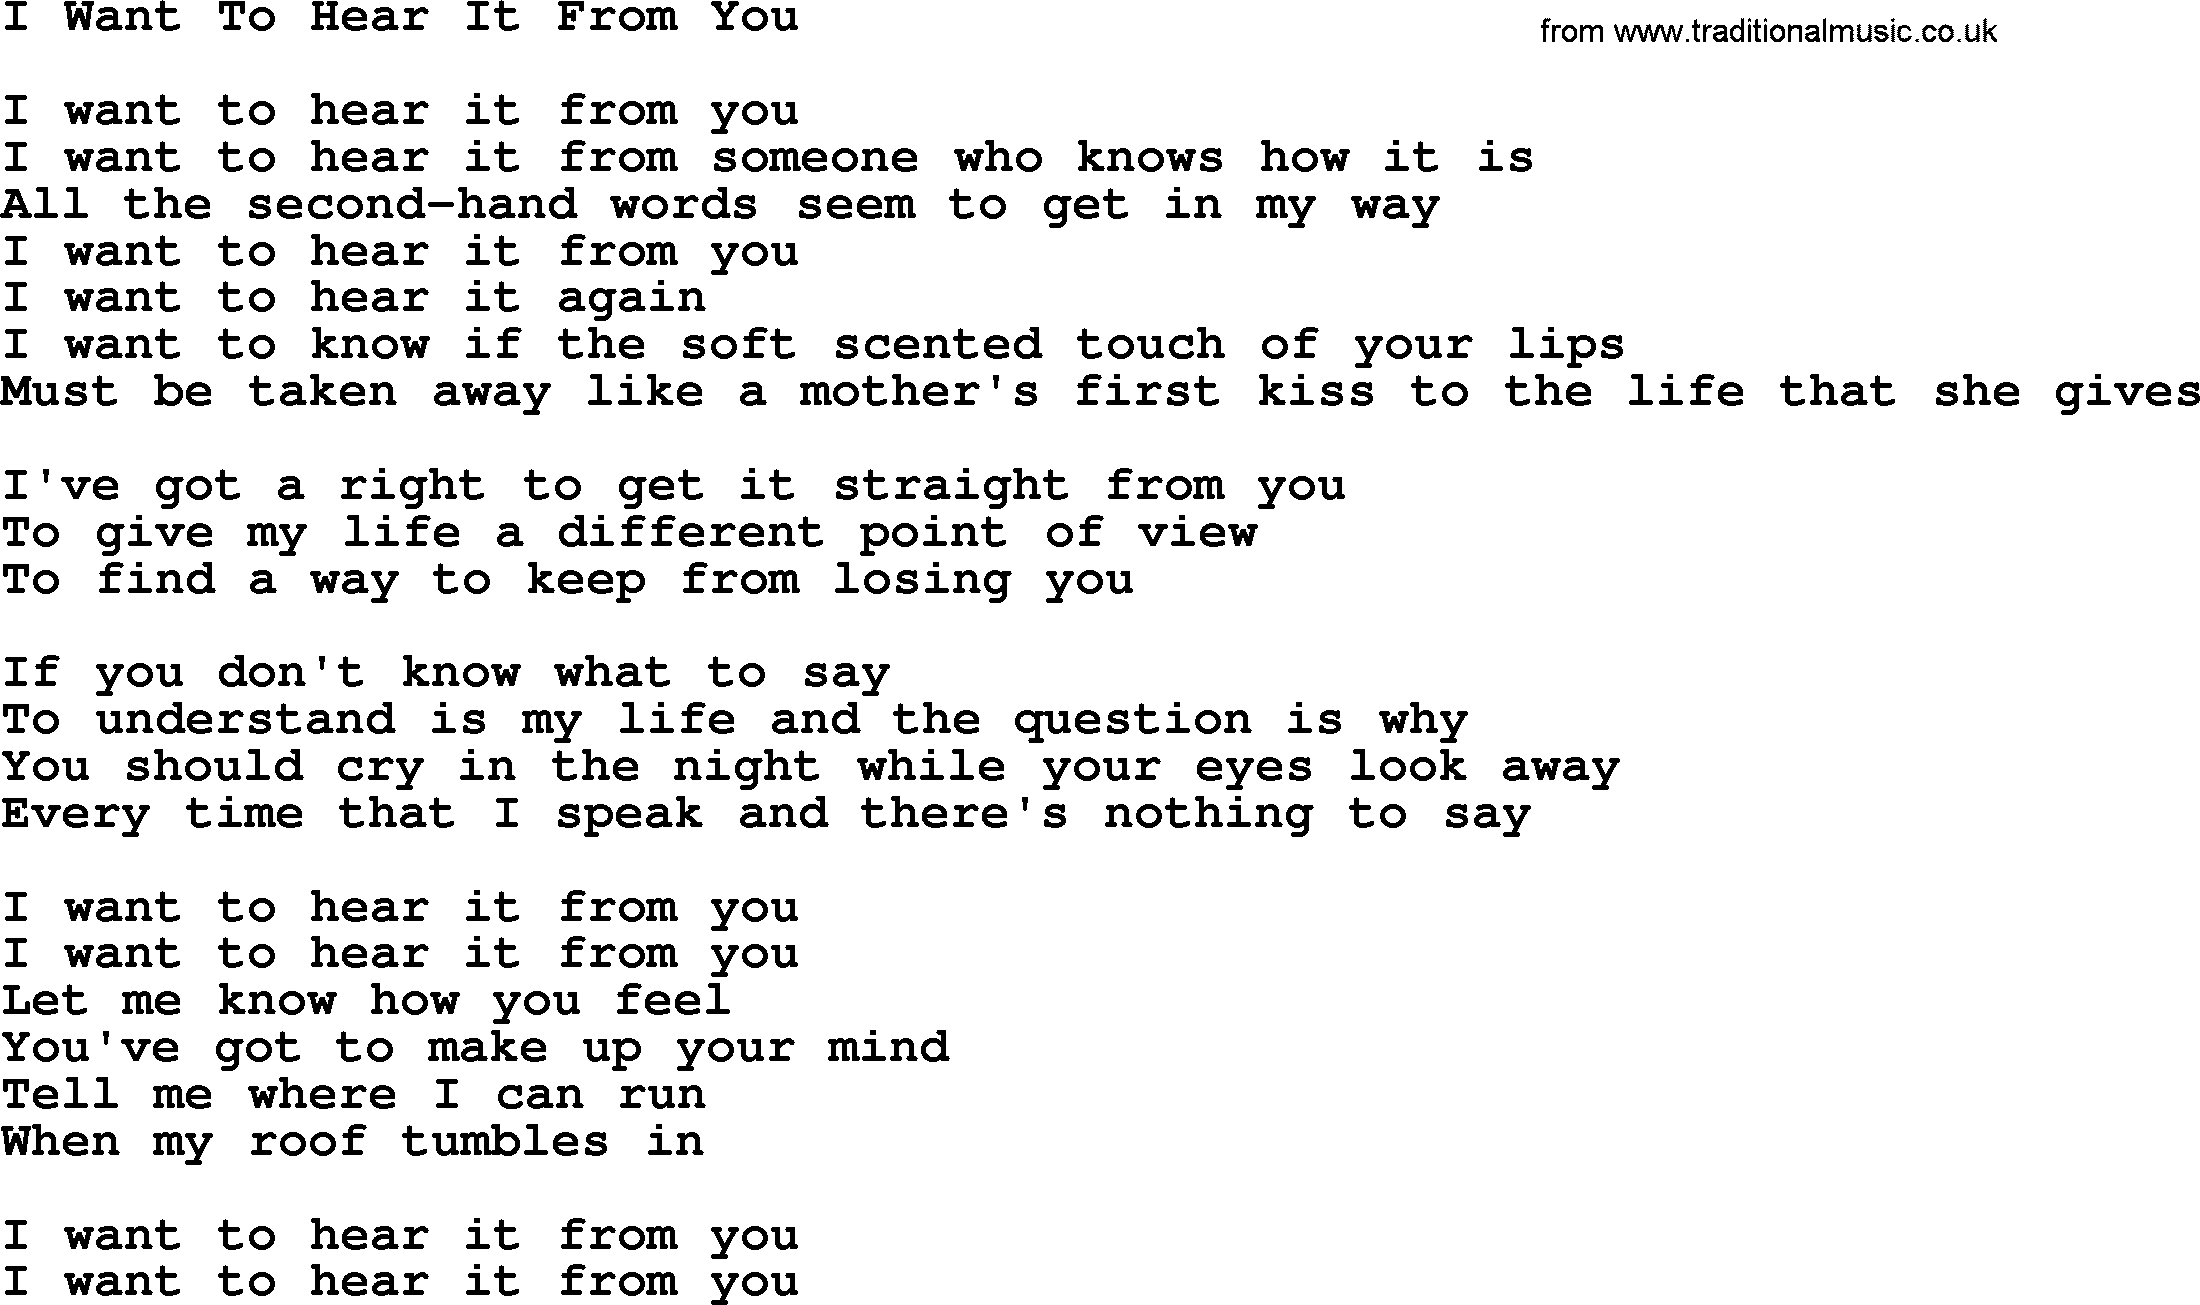 Gordon Lightfoot song I Want To Hear It From You, lyrics